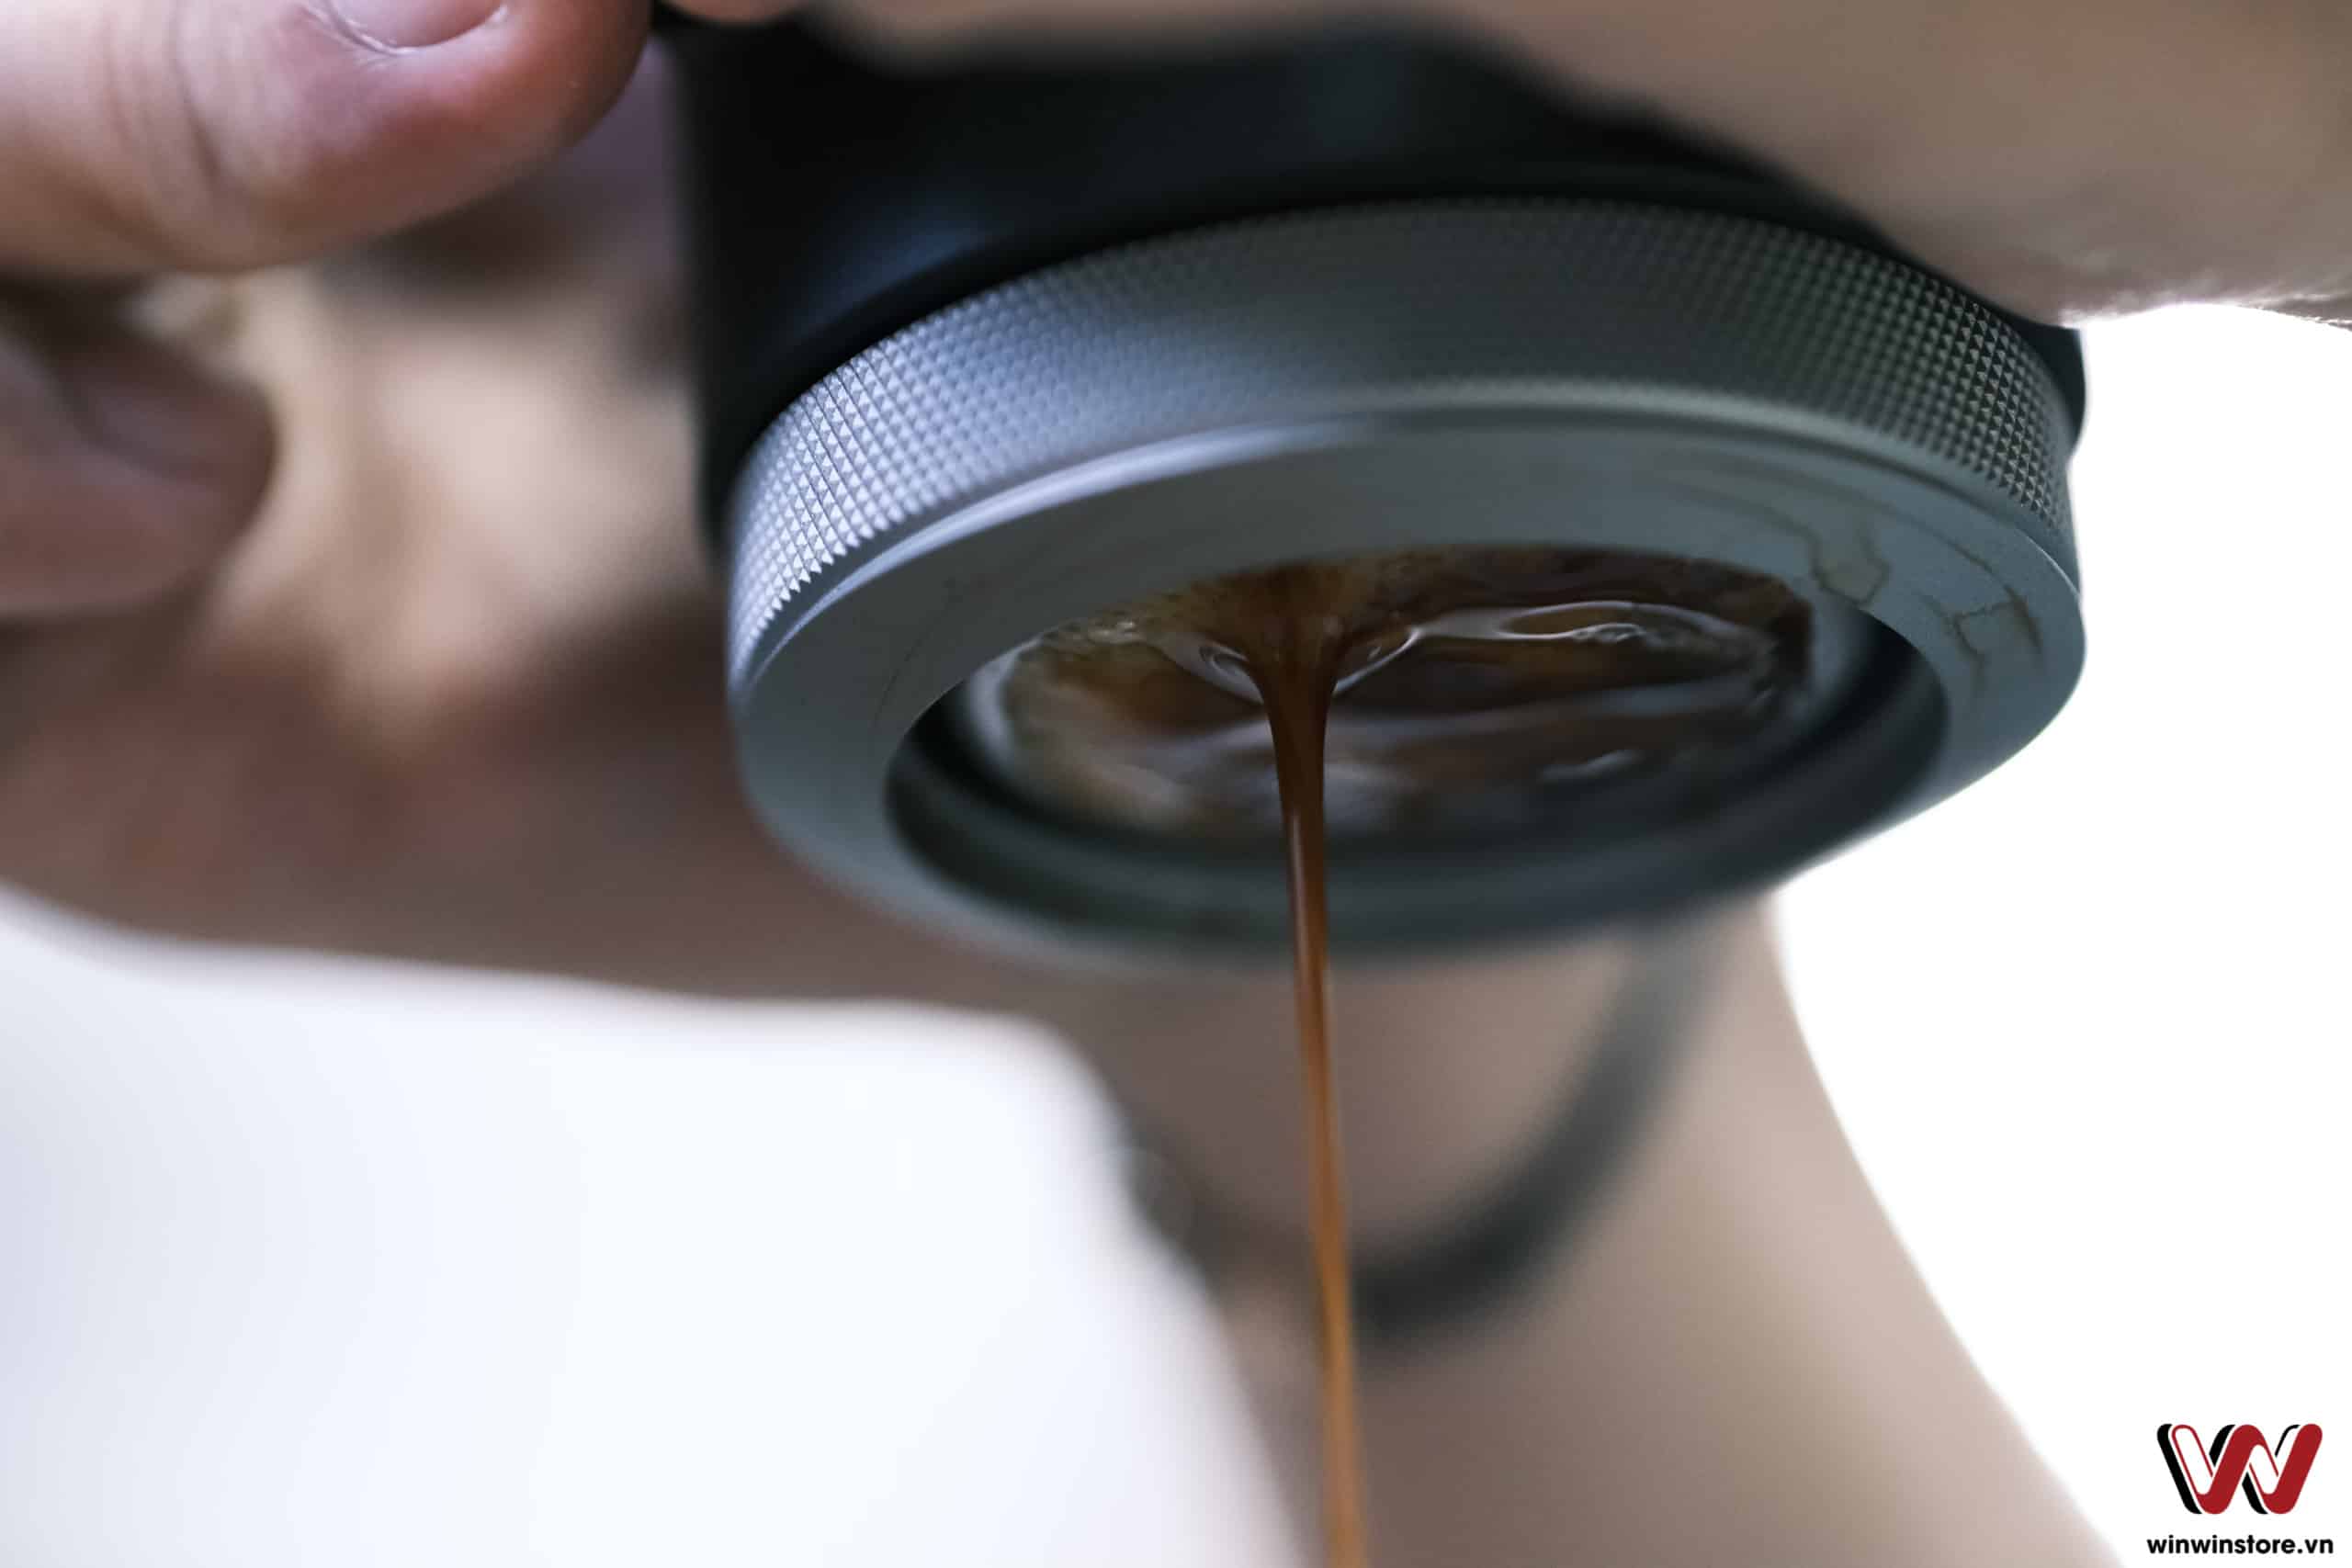 Trên tay dụng cụ pha cà phê Wacaco Picopresso: Pha chế Espresso bằng tay tại nhà, nhỏ gọn và cao cấp có ngay ly cà phê khi cần